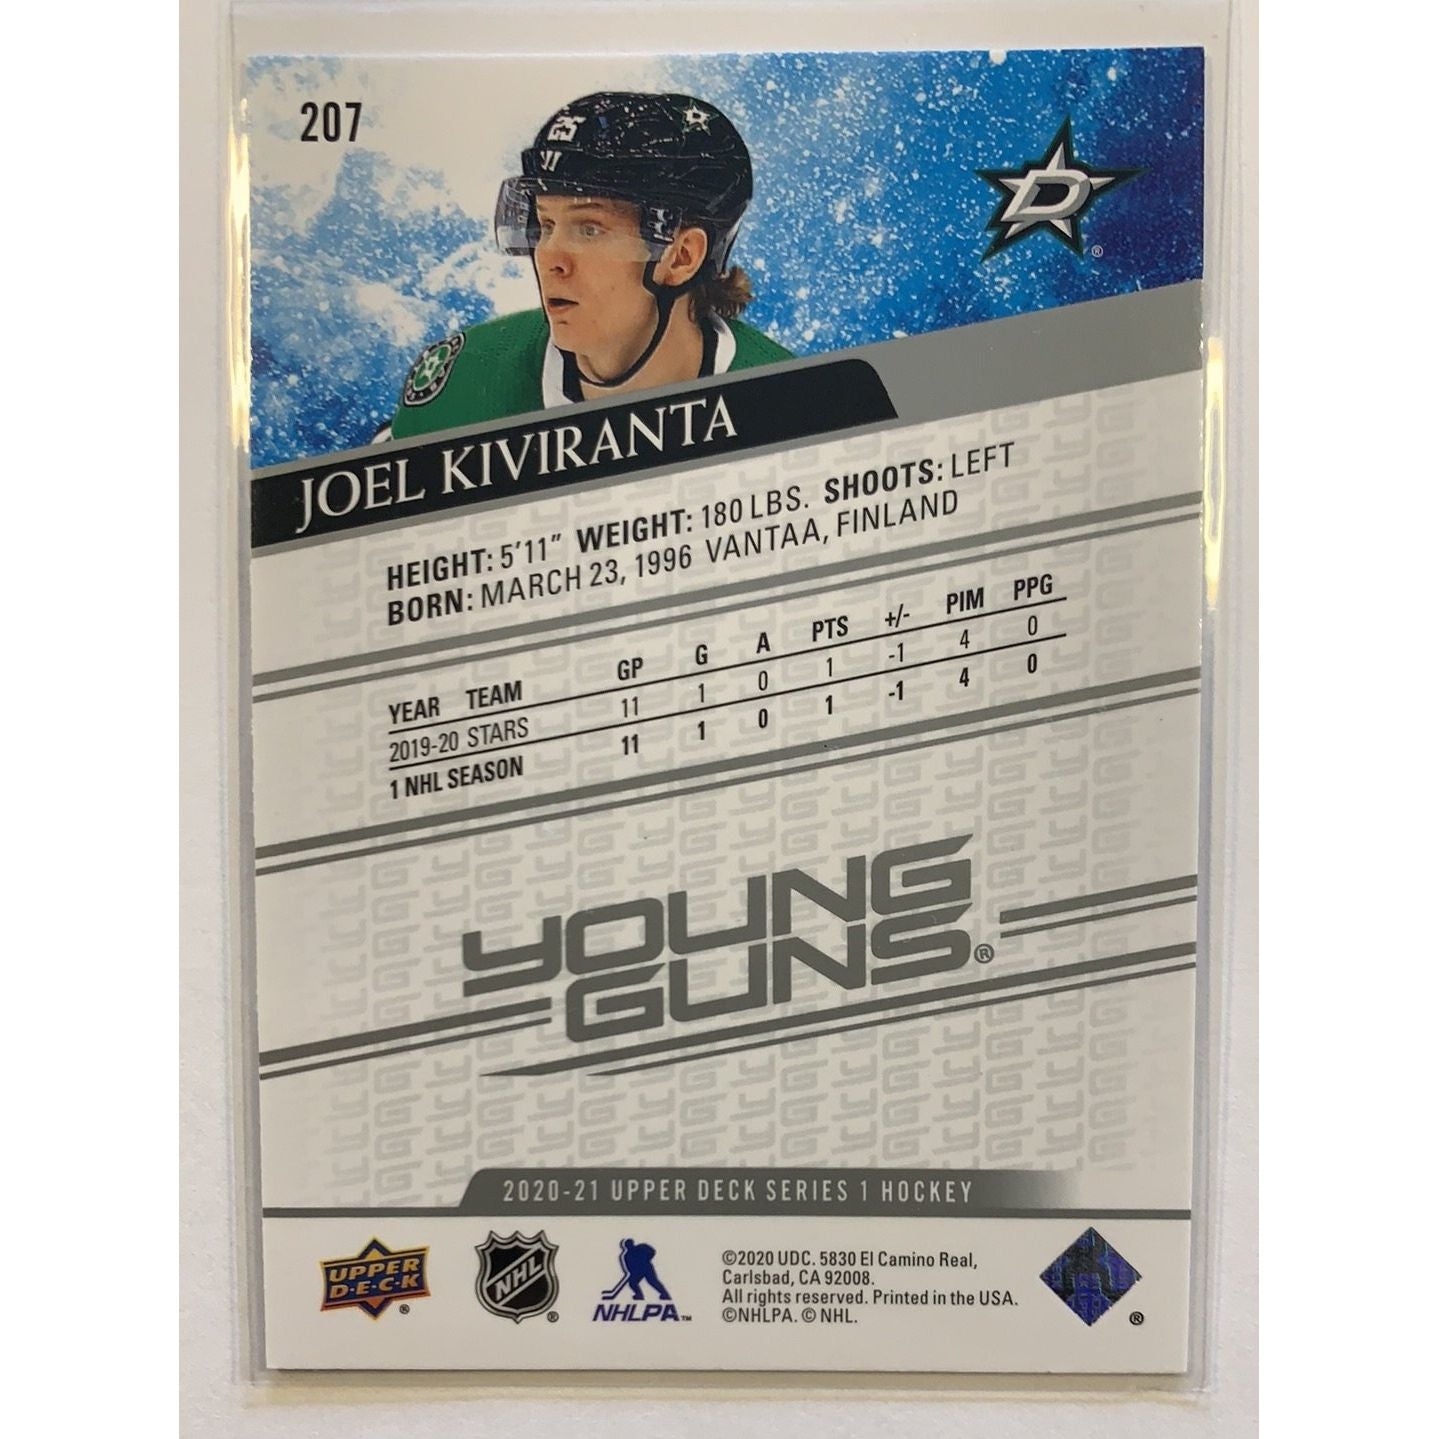  2020-21 Upper Deck Series 1 Joel Kiviranta Young Guns  Local Legends Cards & Collectibles